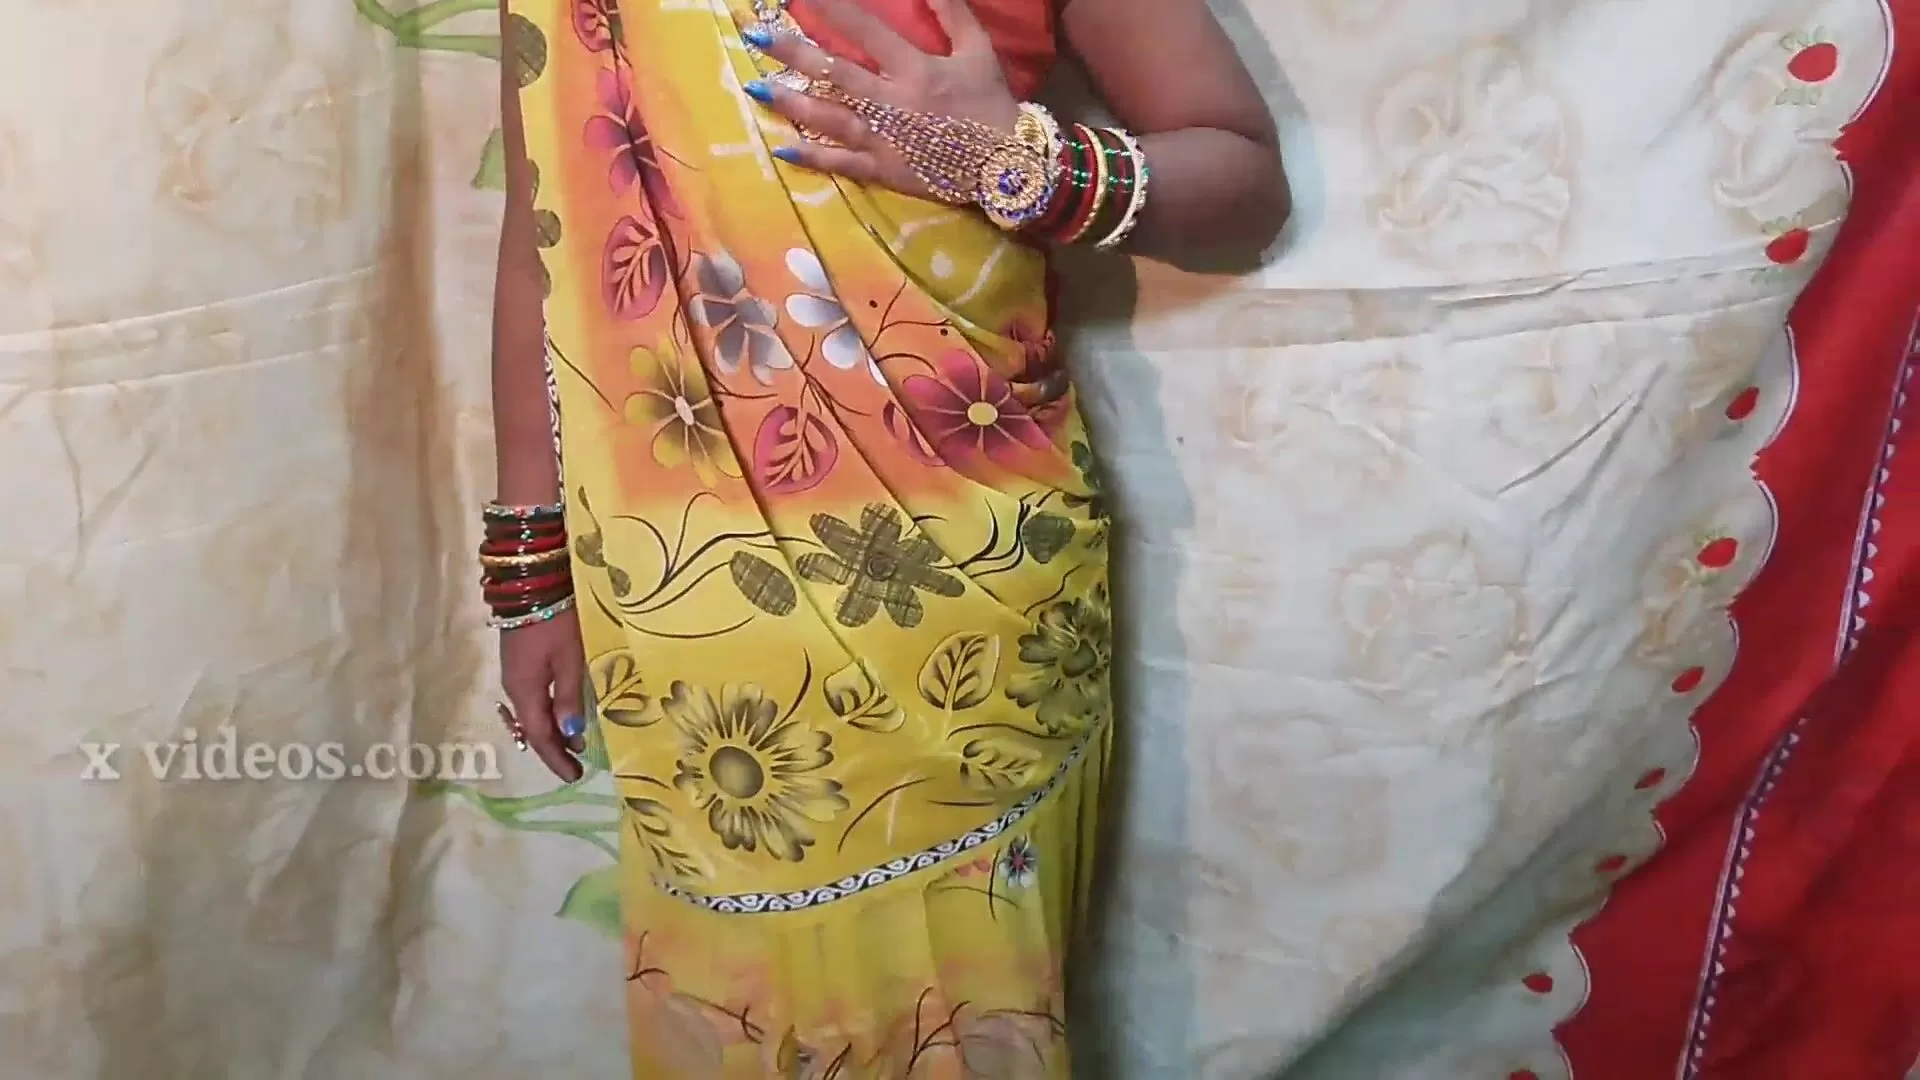 Xxx Video Saree Wali - XXX best first time sali ji looking great in saree Desi Hindi Voice watch  online